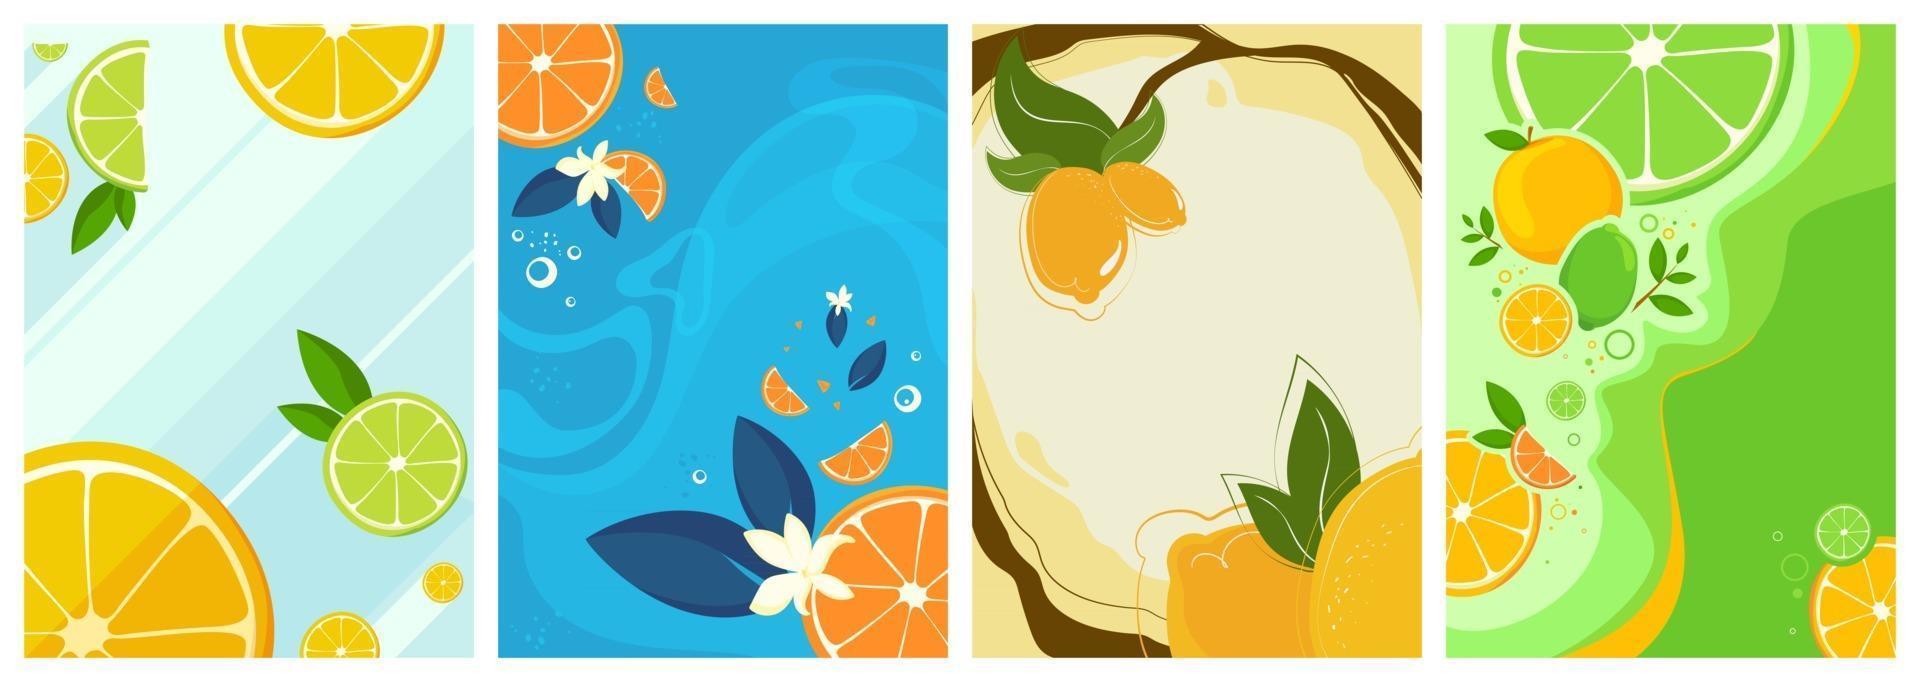 samling av citrusfrukter affischer vektor